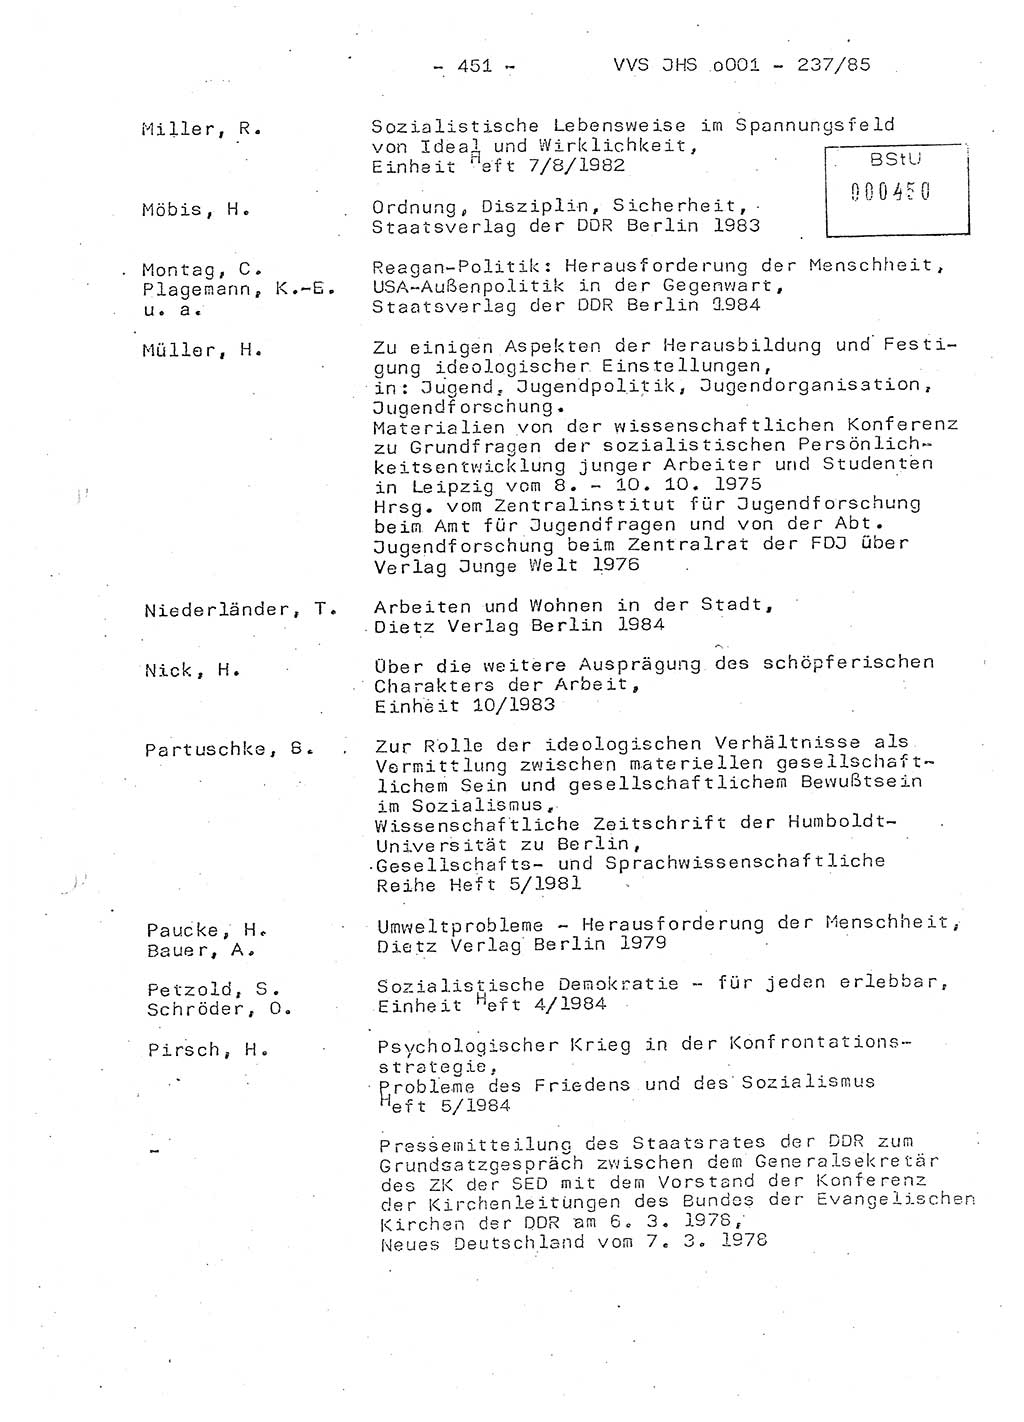 Dissertation Oberstleutnant Peter Jakulski (JHS), Oberstleutnat Christian Rudolph (HA Ⅸ), Major Horst Böttger (ZMD), Major Wolfgang Grüneberg (JHS), Major Albert Meutsch (JHS), Ministerium für Staatssicherheit (MfS) [Deutsche Demokratische Republik (DDR)], Juristische Hochschule (JHS), Vertrauliche Verschlußsache (VVS) o001-237/85, Potsdam 1985, Seite 451 (Diss. MfS DDR JHS VVS o001-237/85 1985, S. 451)